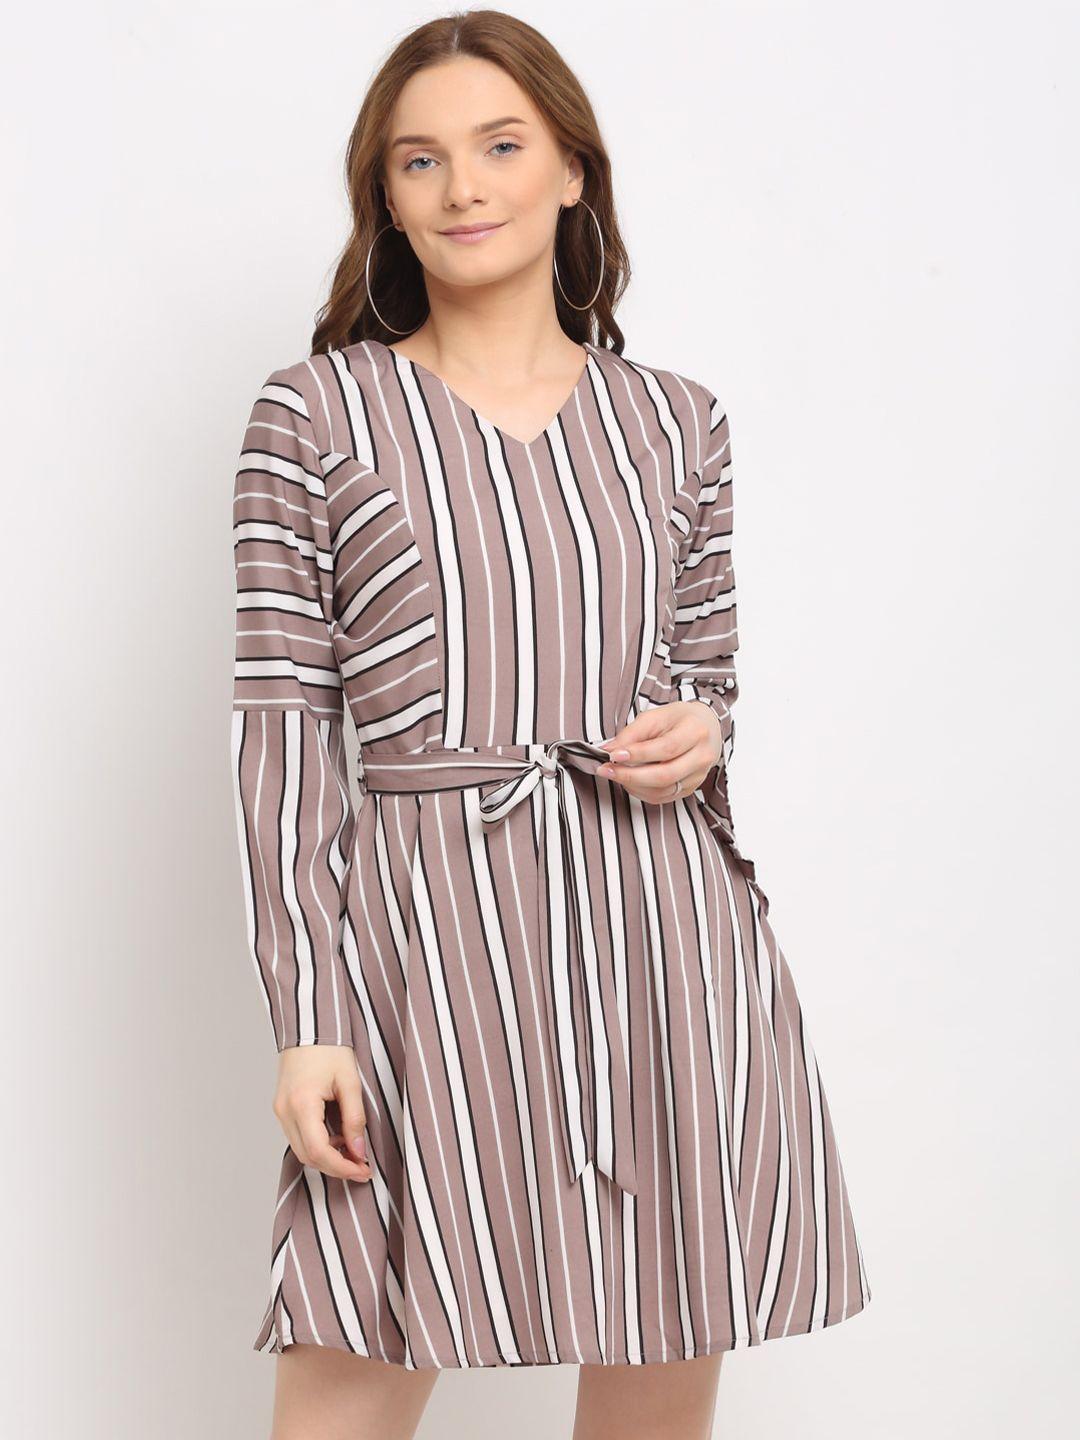 la-zoire-coffee-brown-&-white-striped-crepe-dress